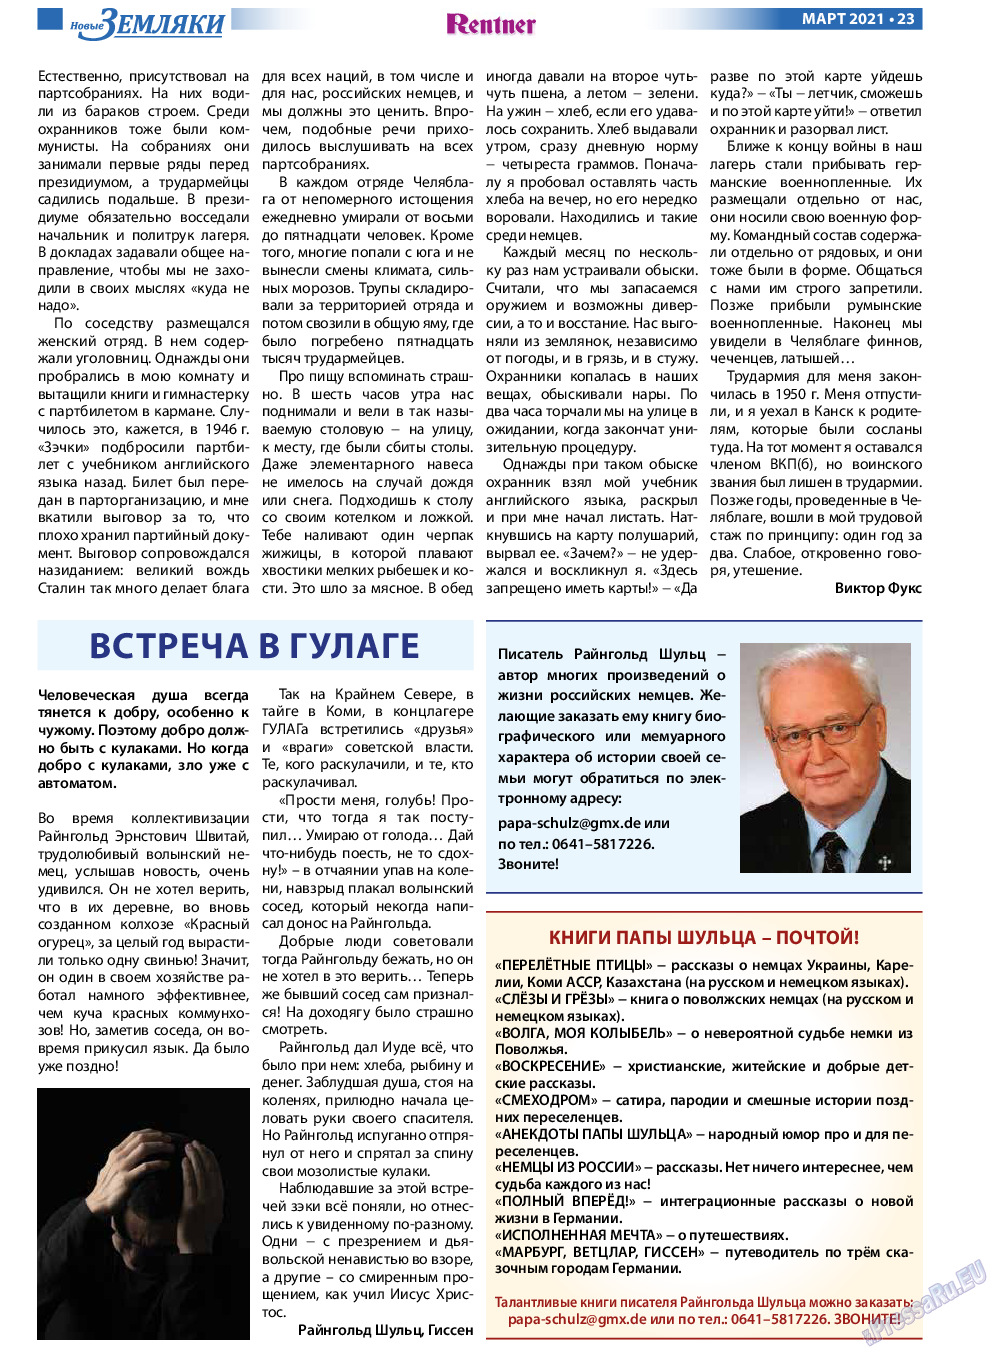 Новые Земляки, газета. 2021 №3 стр.23